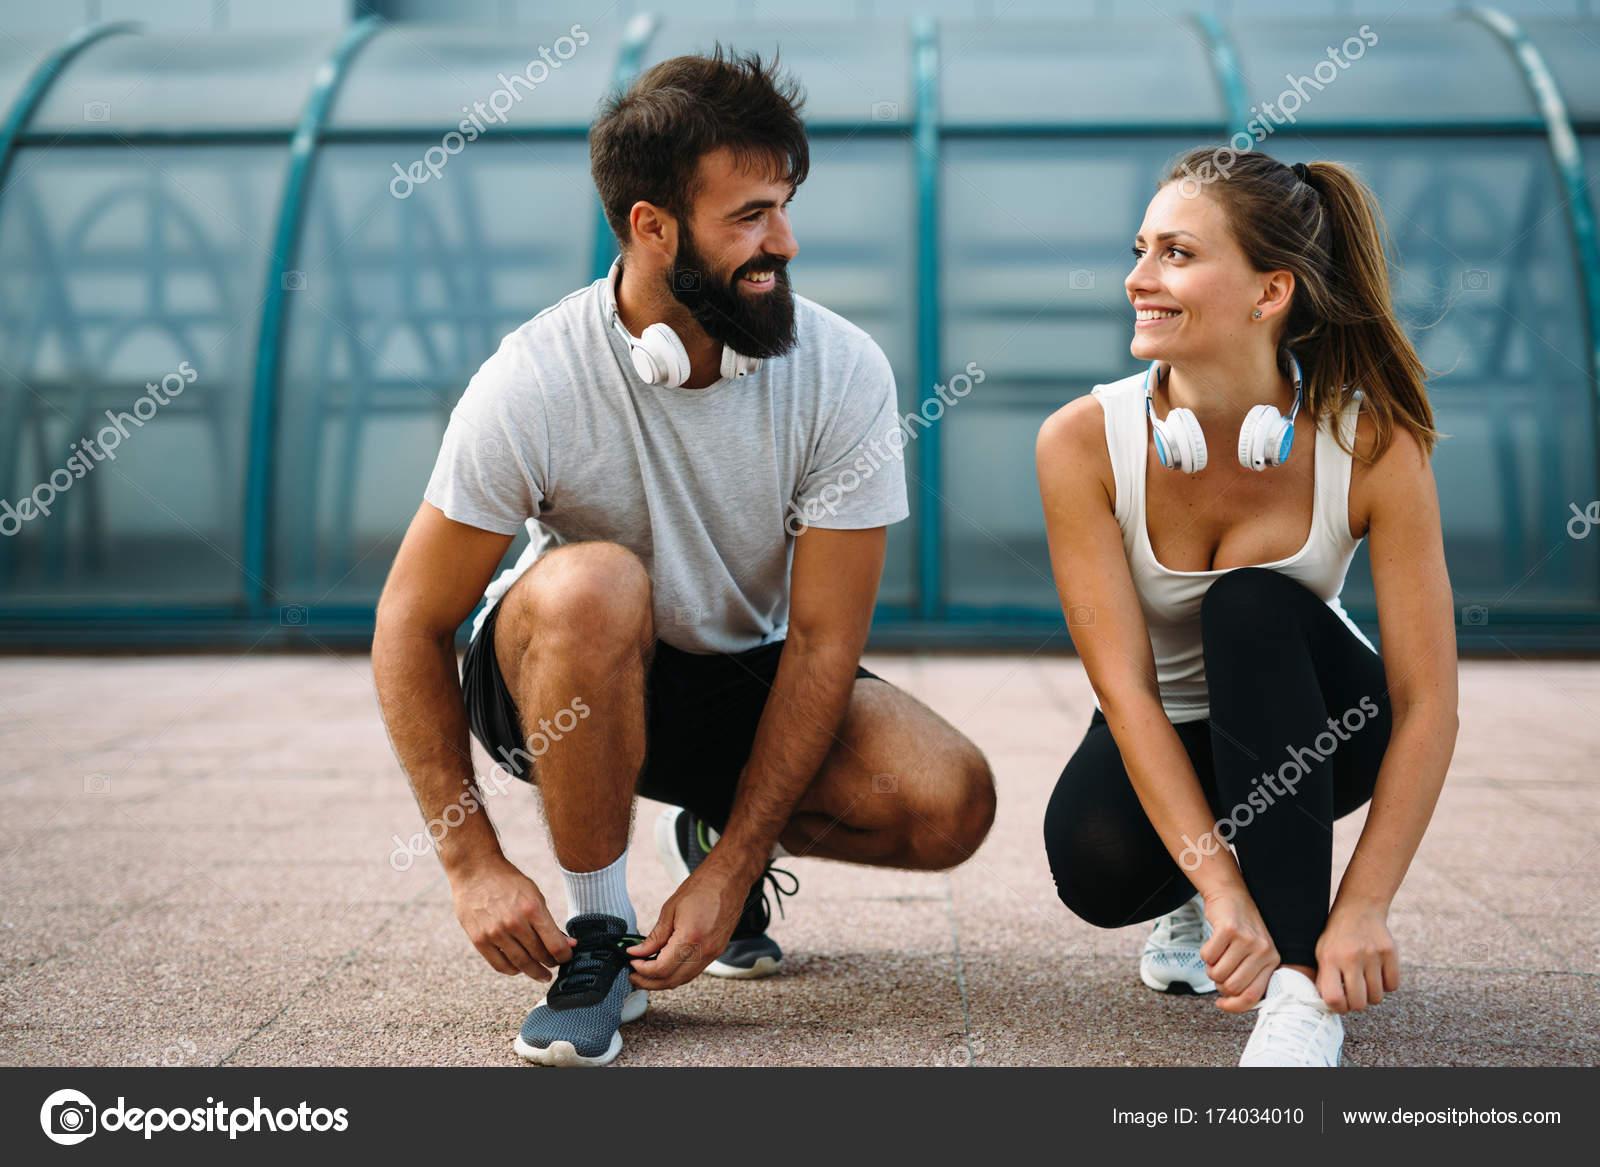 Depositphotos 174034010 stock photo attractive happy fitness couple